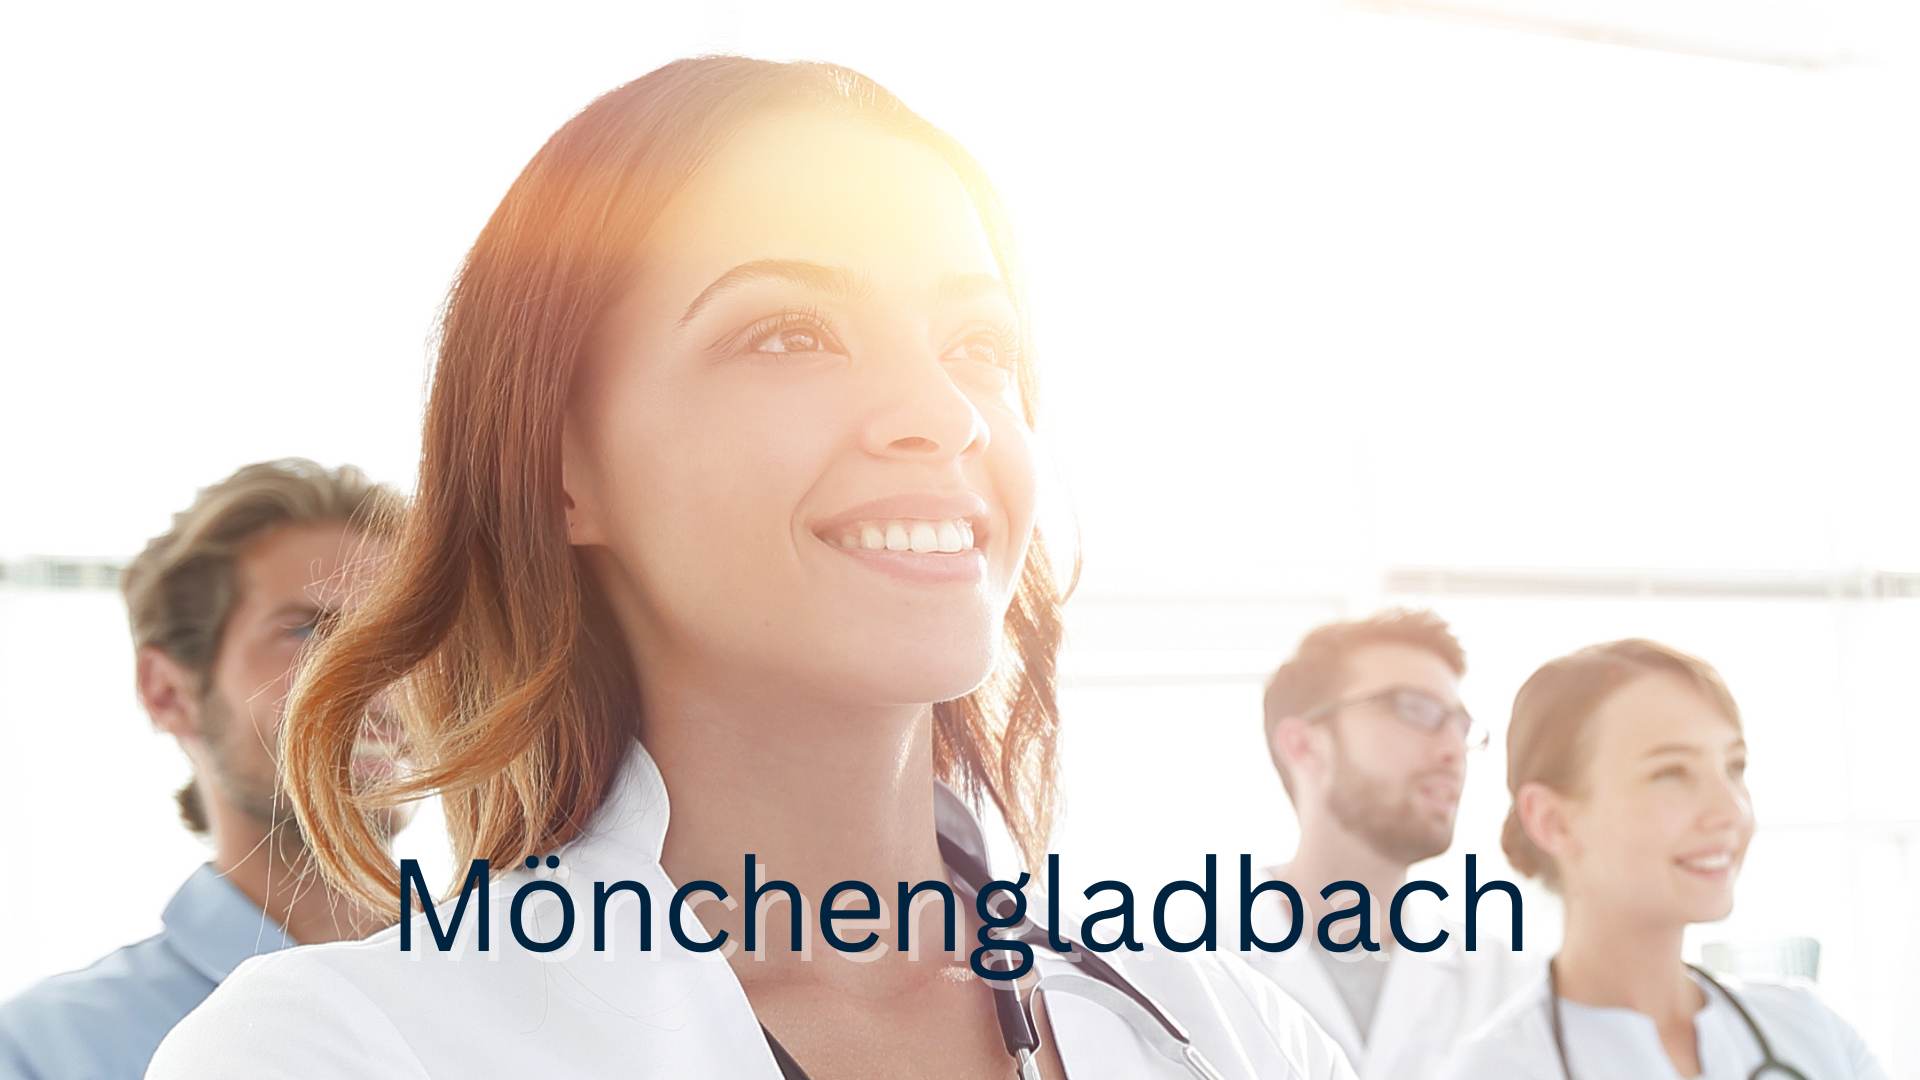 Stockbild mit vier lächelnden Medizinern und Mönchengladbach als Schriftzug 